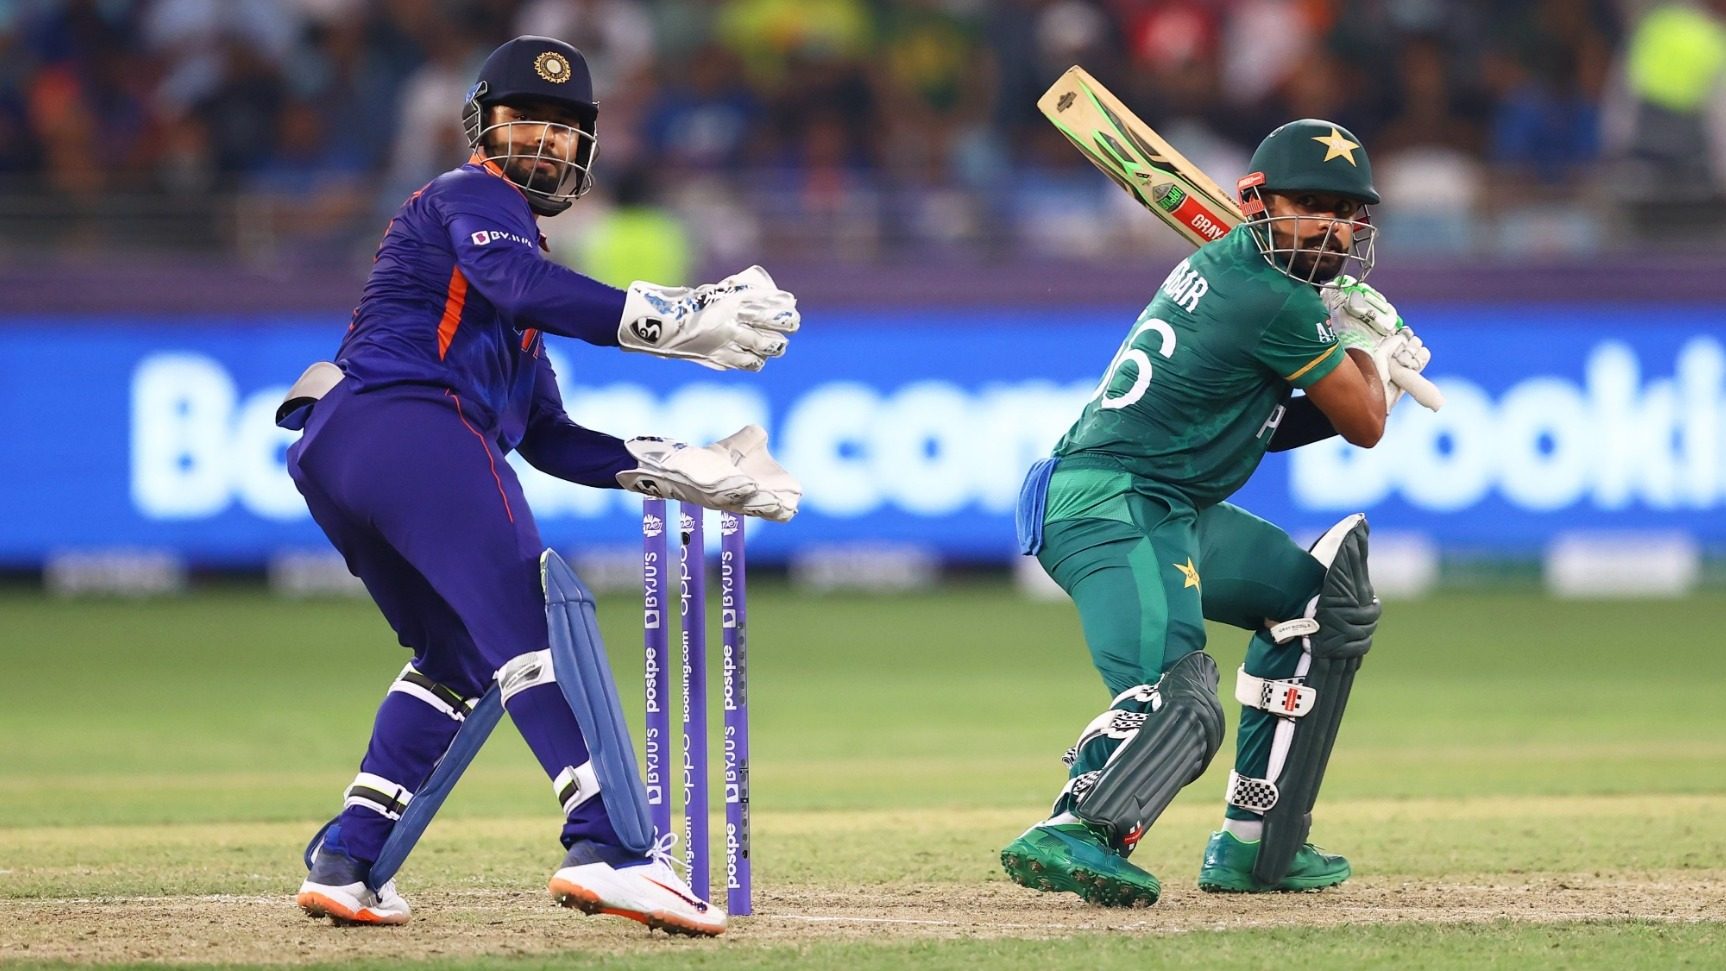 India vs Pakistan cricket records, head-to-head and stats